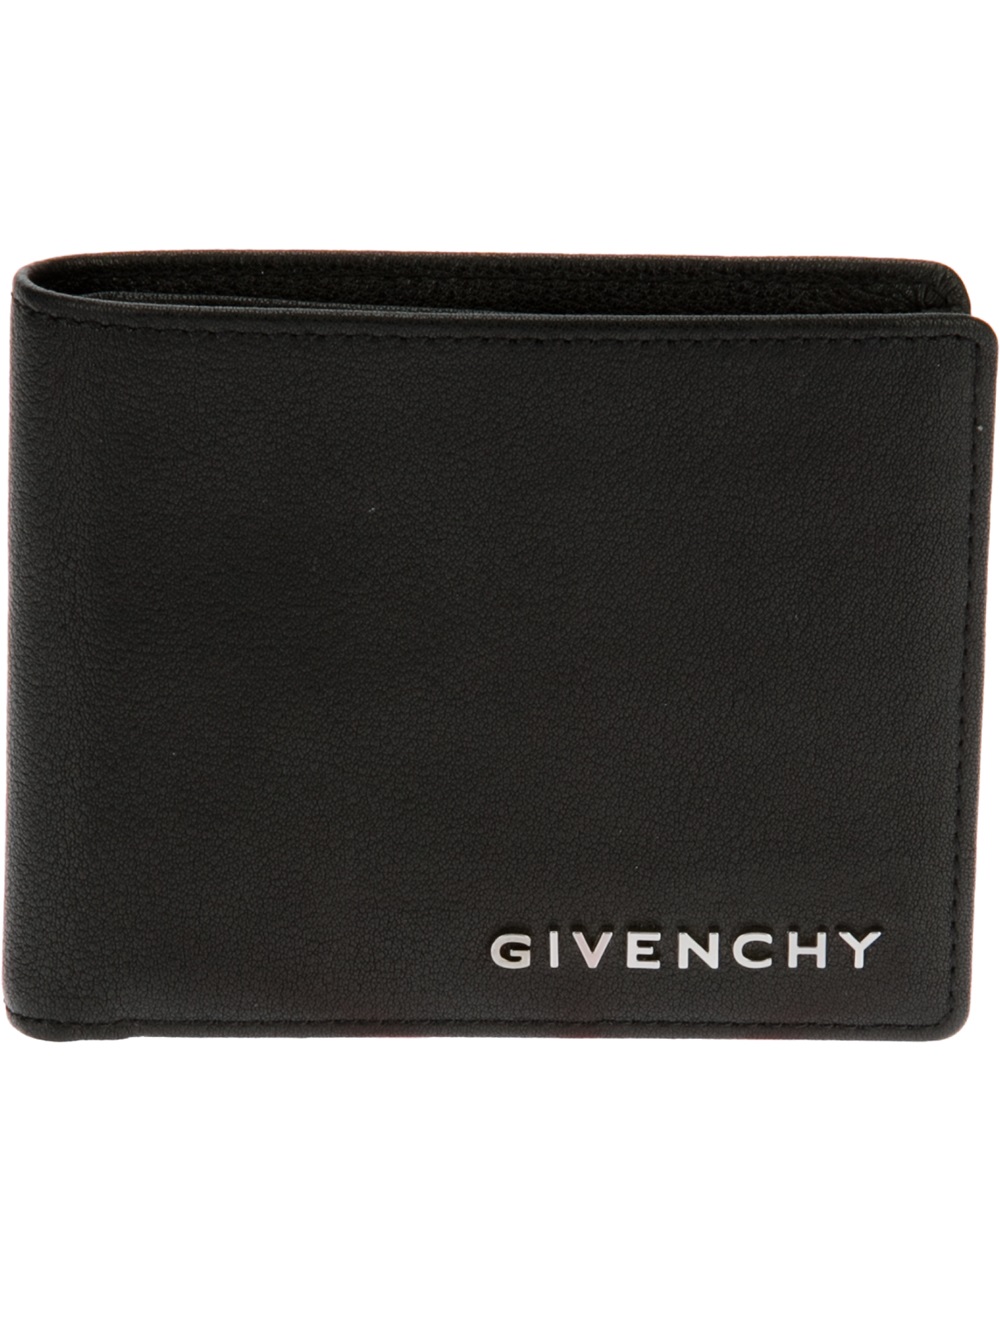 Lyst - Givenchy Logo Wallet in Black for Men